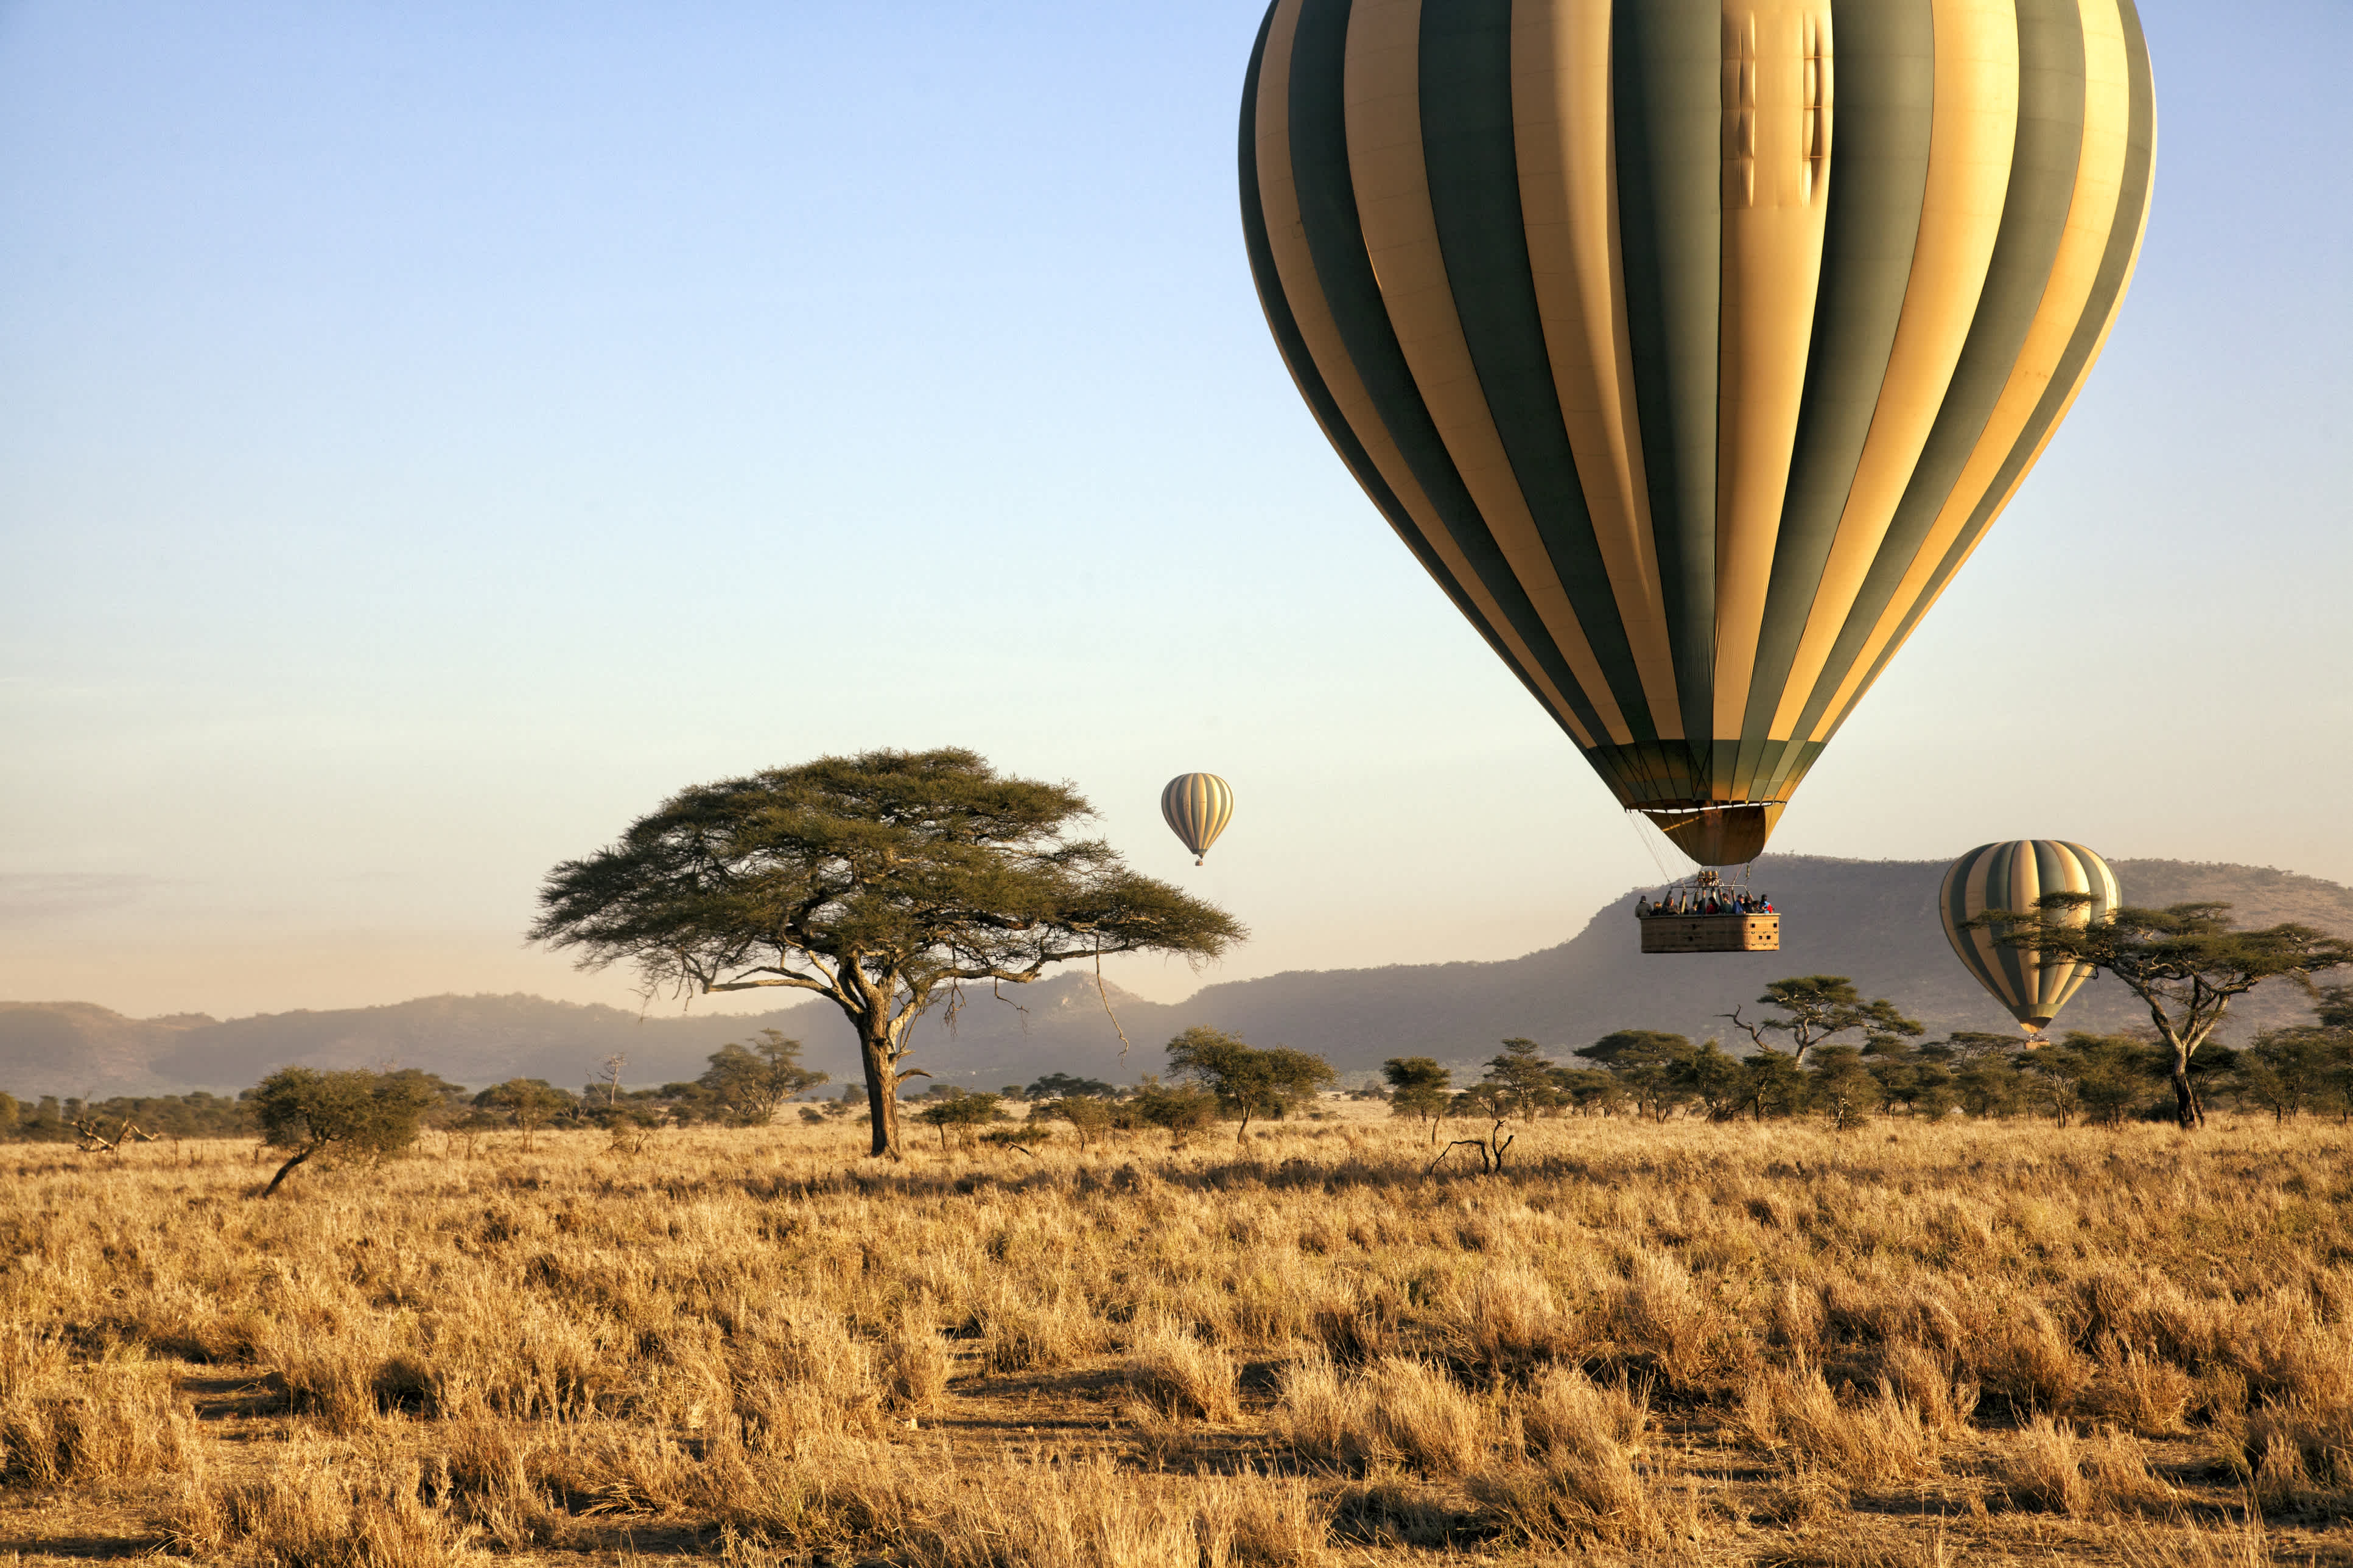 Survol de la savane en montgolfière pendant un circuit de 15 jours en Tanzanie combiné à l'île du Zanzibar.